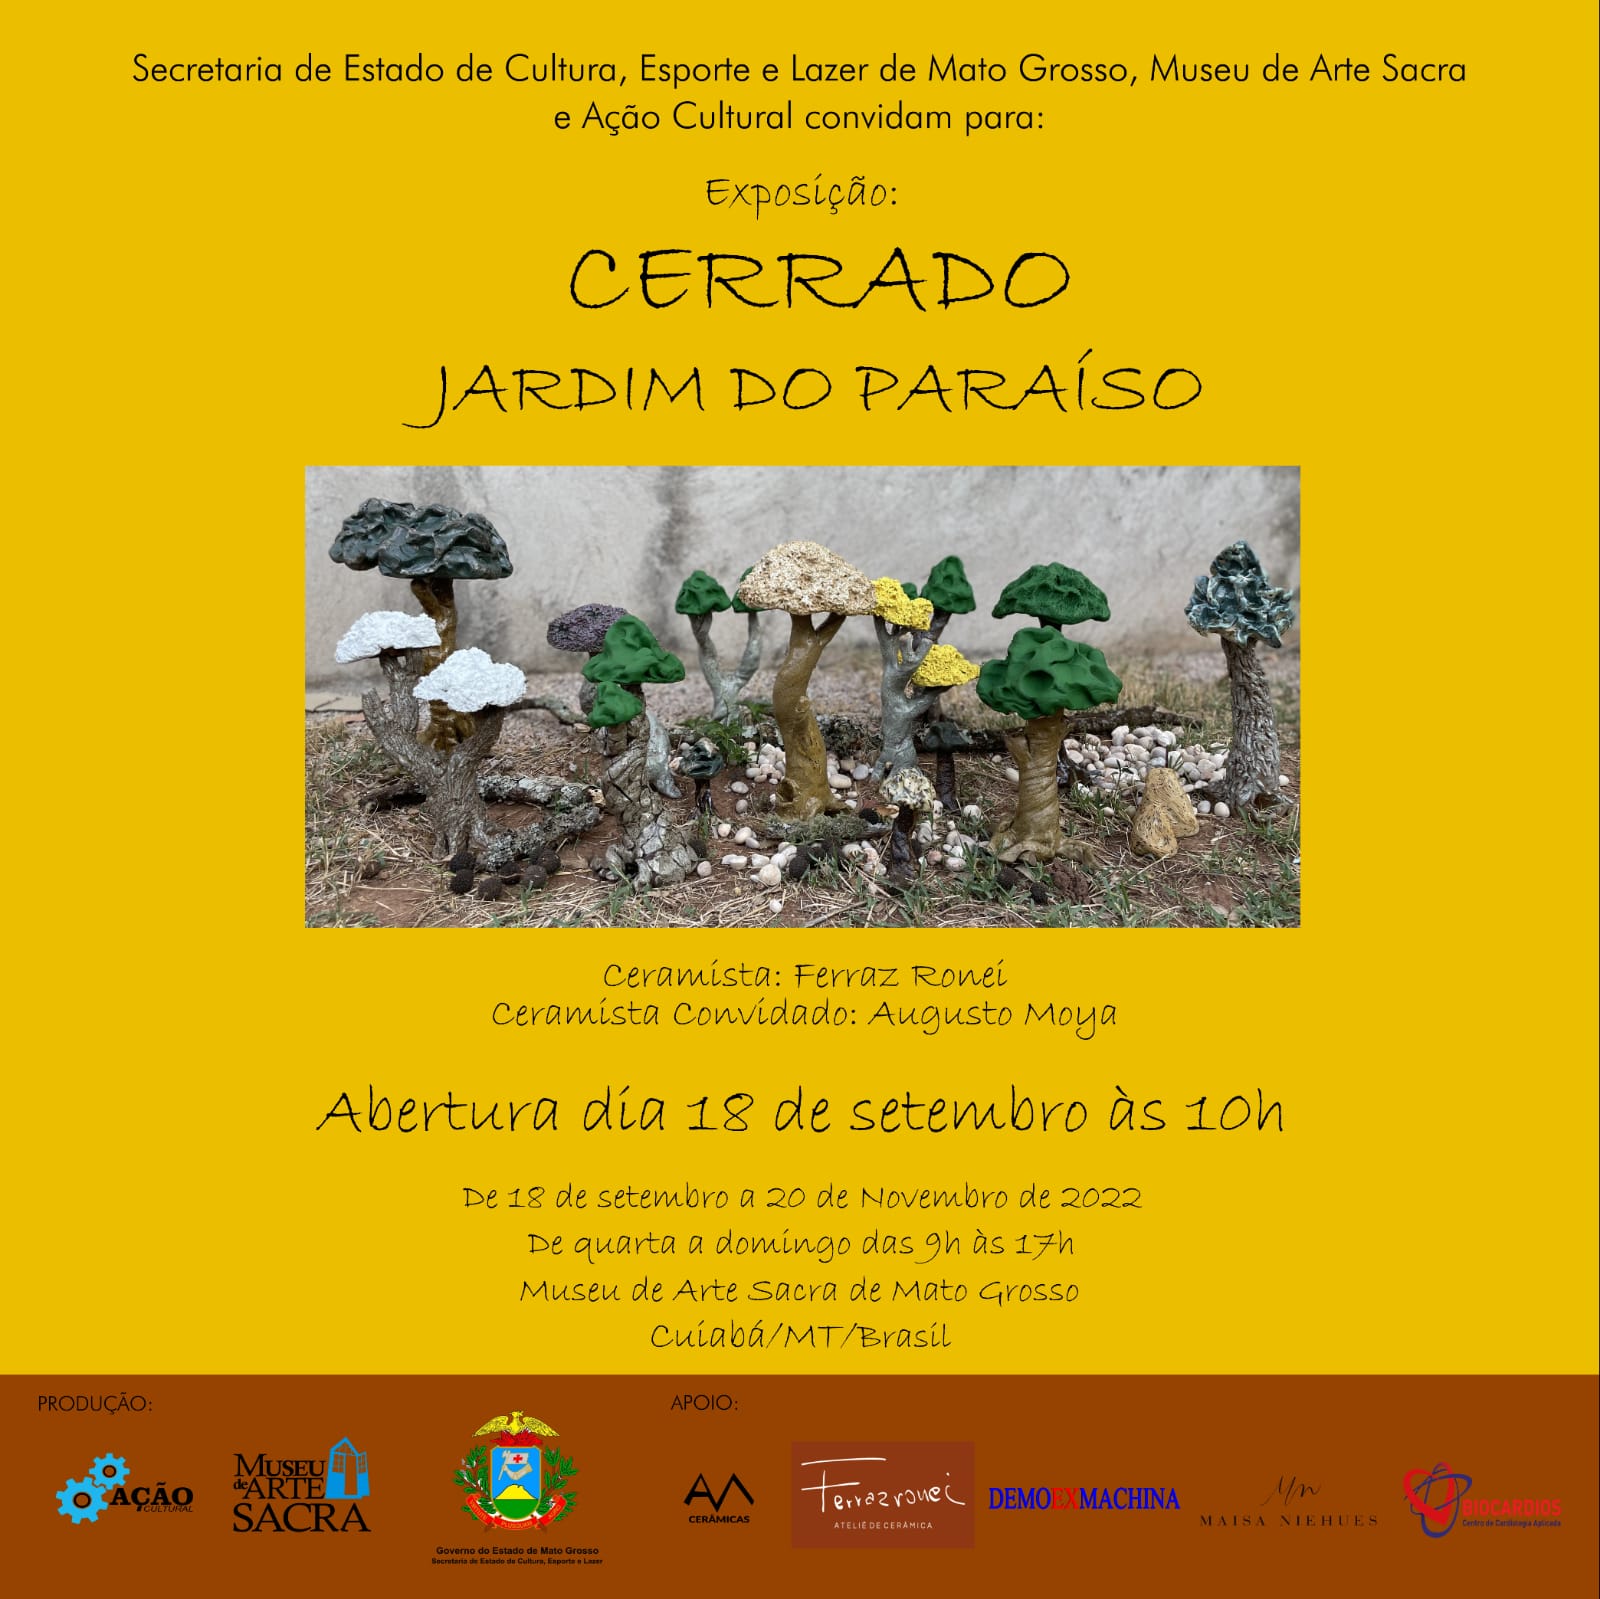 Jogo dos Biomas Gastronômicos - Museu do Cerrado